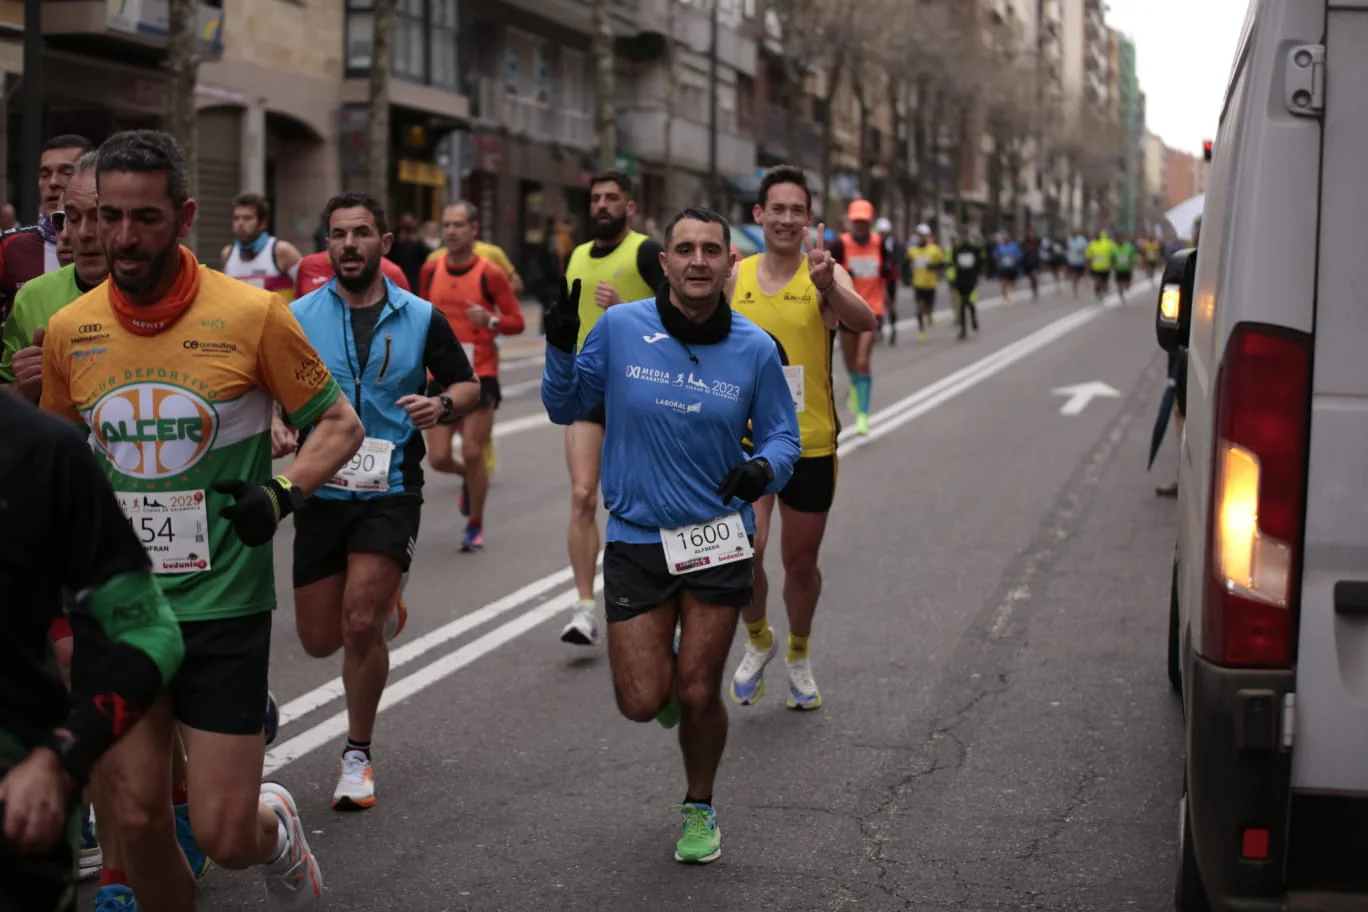 Fotos: Javier Alves y Gema Martín ganan la XI Media Maratón Ciudad de Salamanca